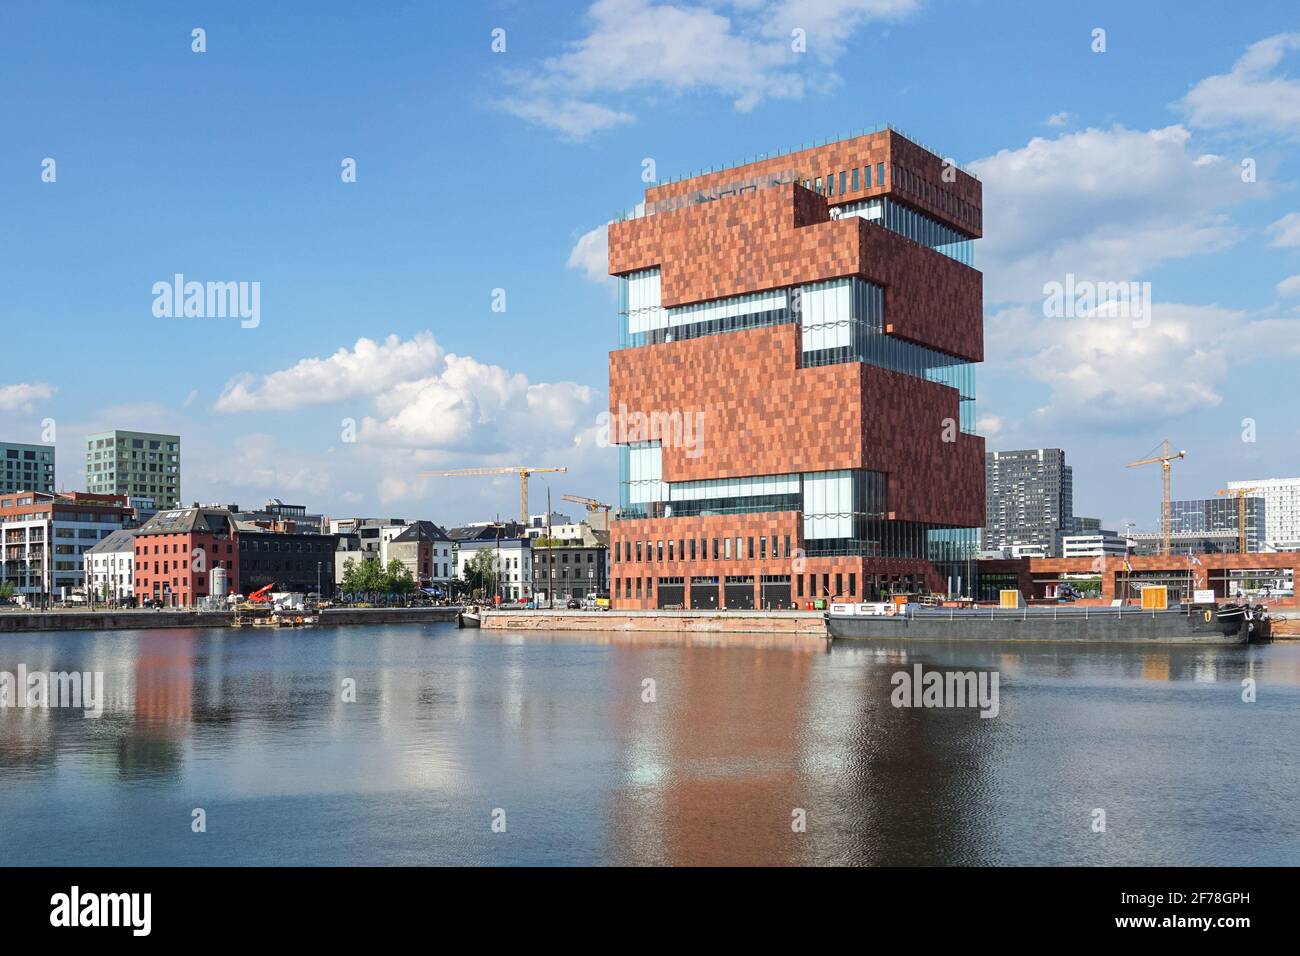 Museum aan de Stroom, MAS, Museum im Stadtteil Eilandje von Antwerpen, Belgien Stockfoto